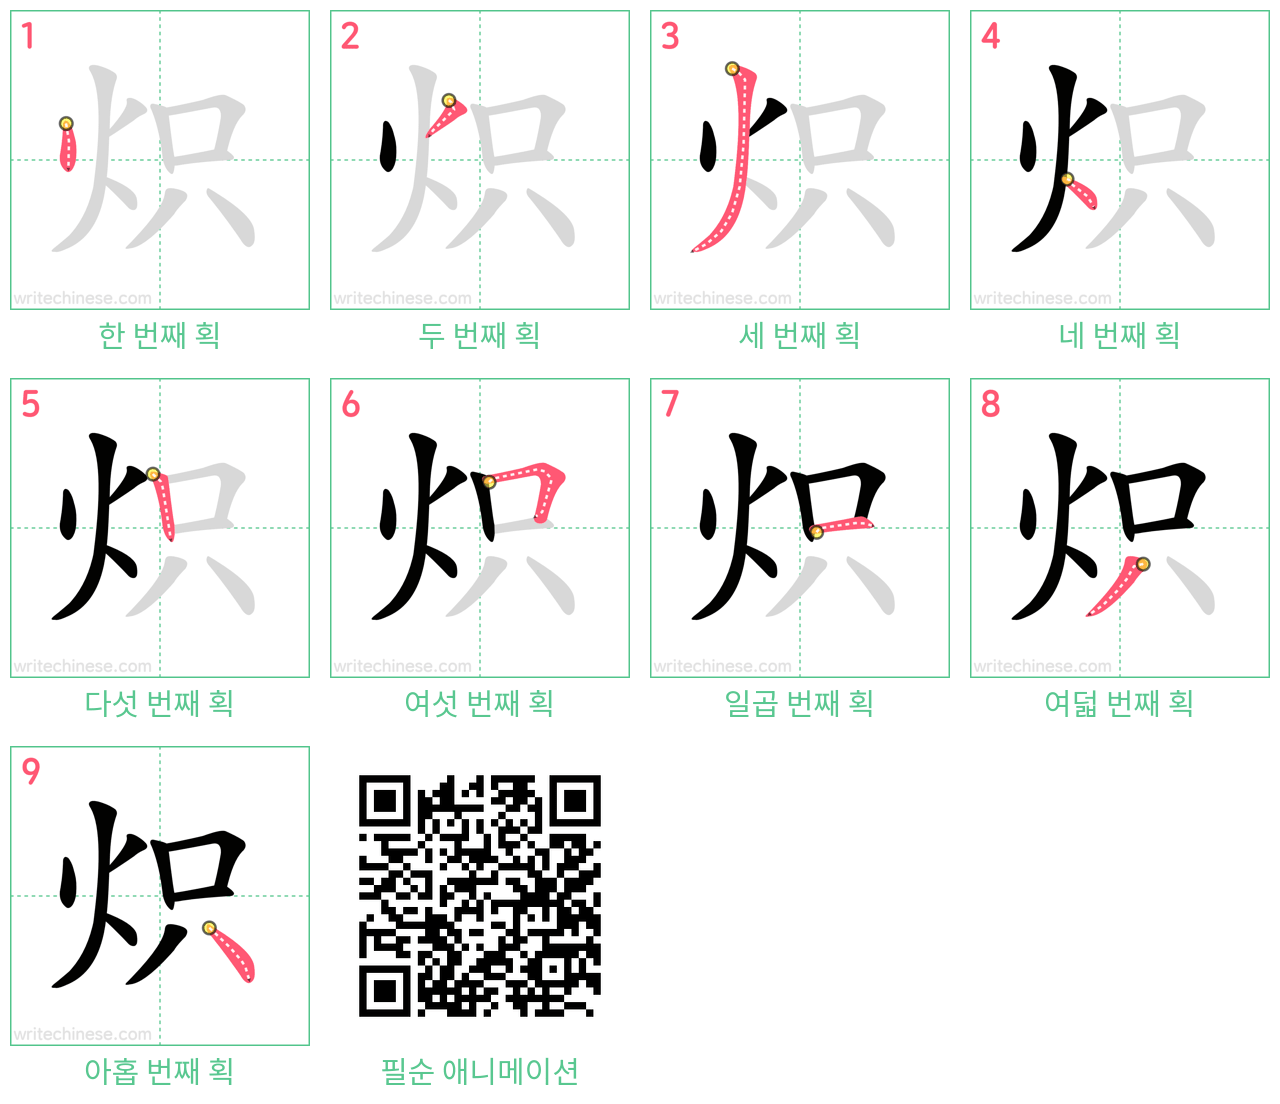 炽 step-by-step stroke order diagrams